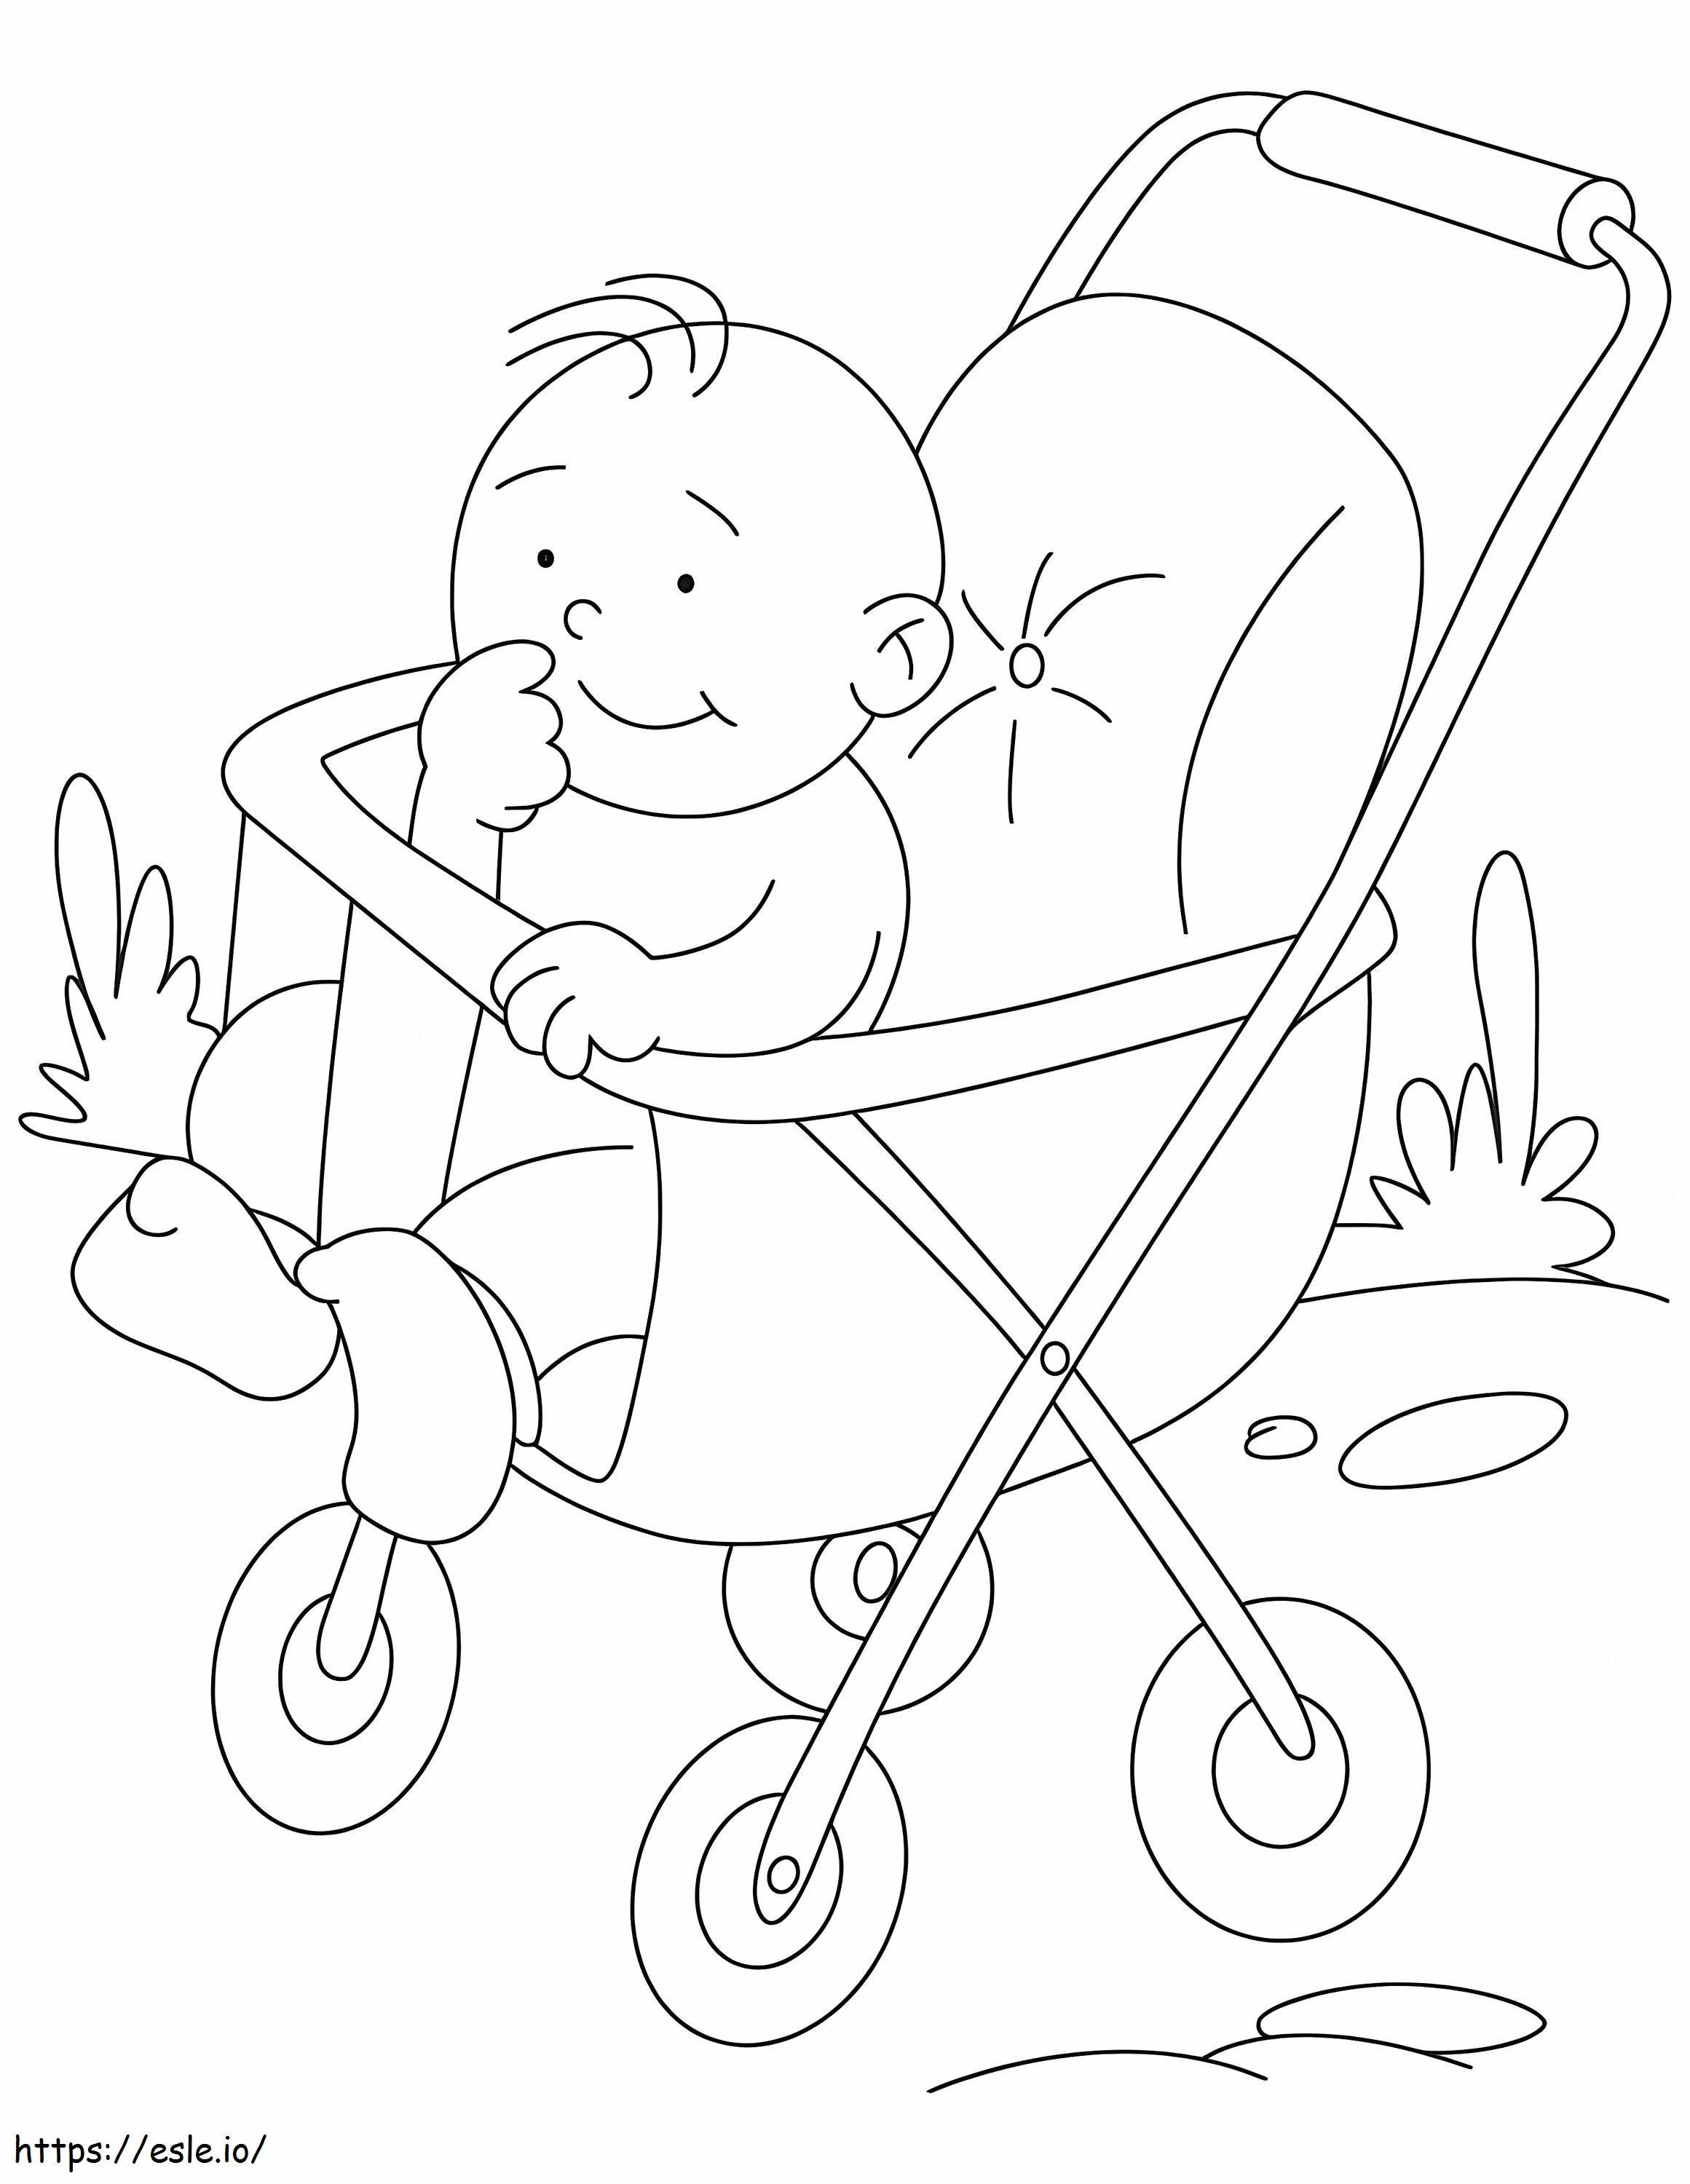 Malseite für einen kleinen Jungen im Kinderwagen ausmalbilder